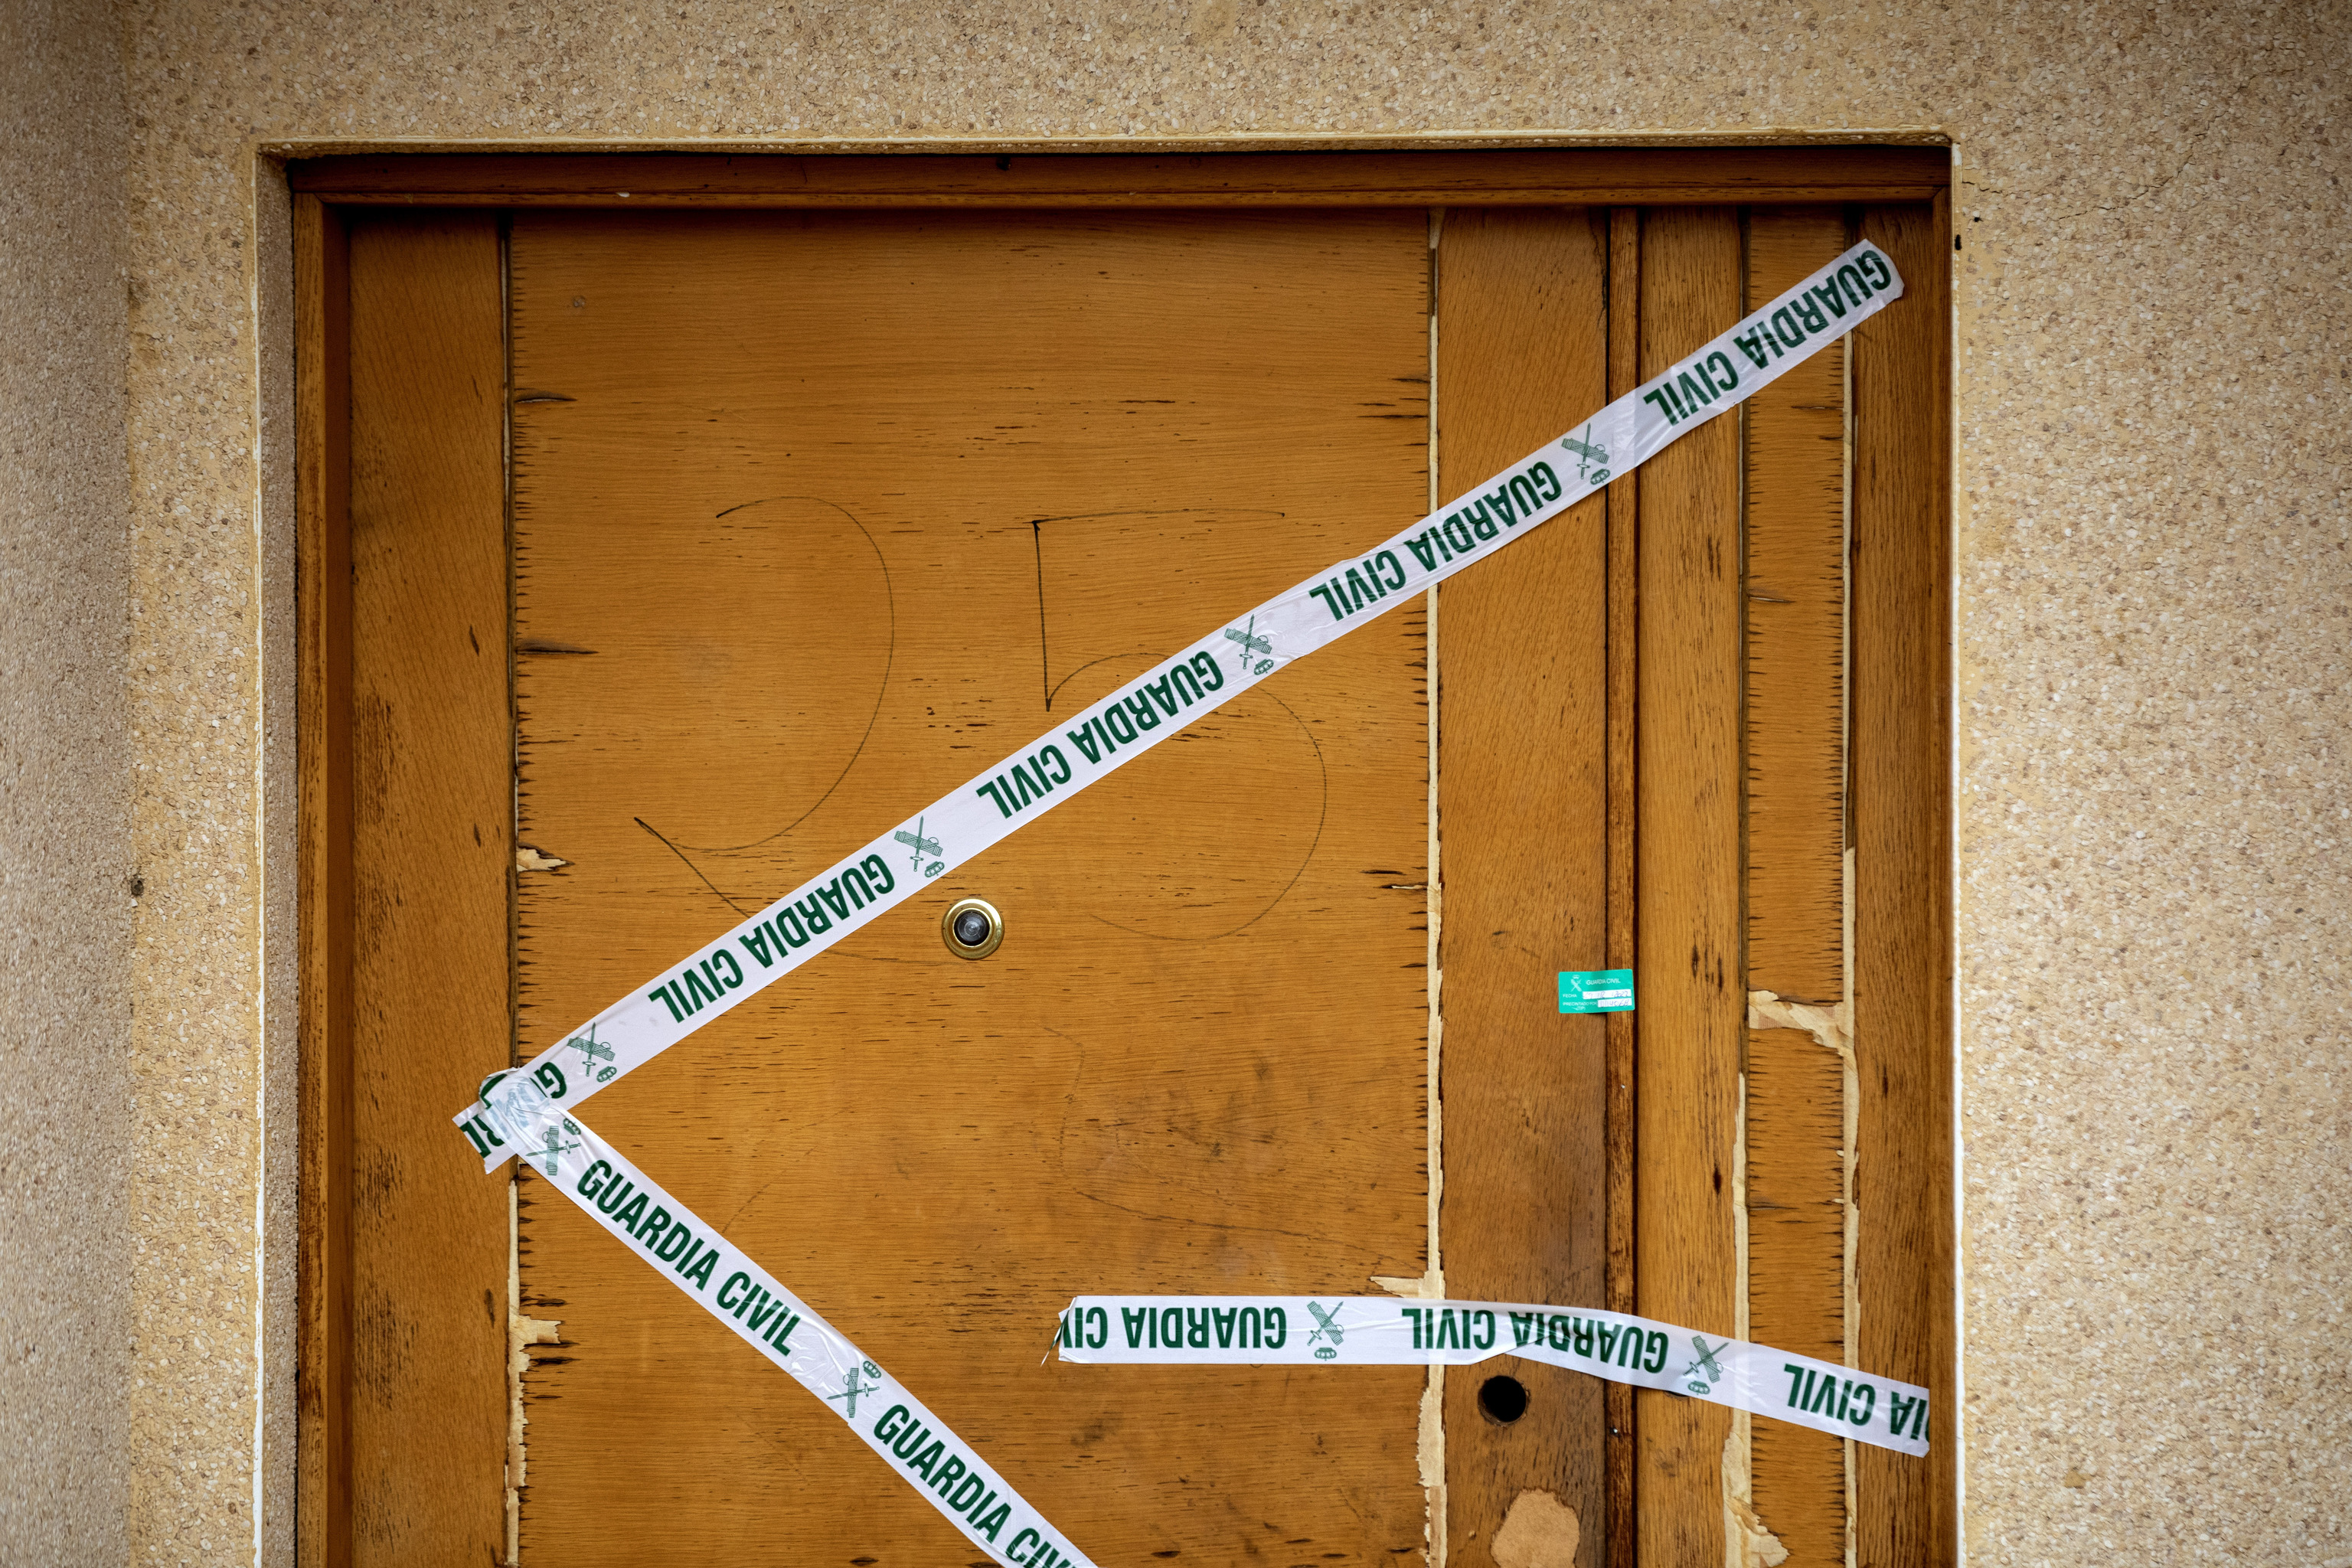 Un precinto de la Guardia Civil impide el acceso a la vivienda de Escalona (Toledo) donde fue asesinada una mujer embarazada.